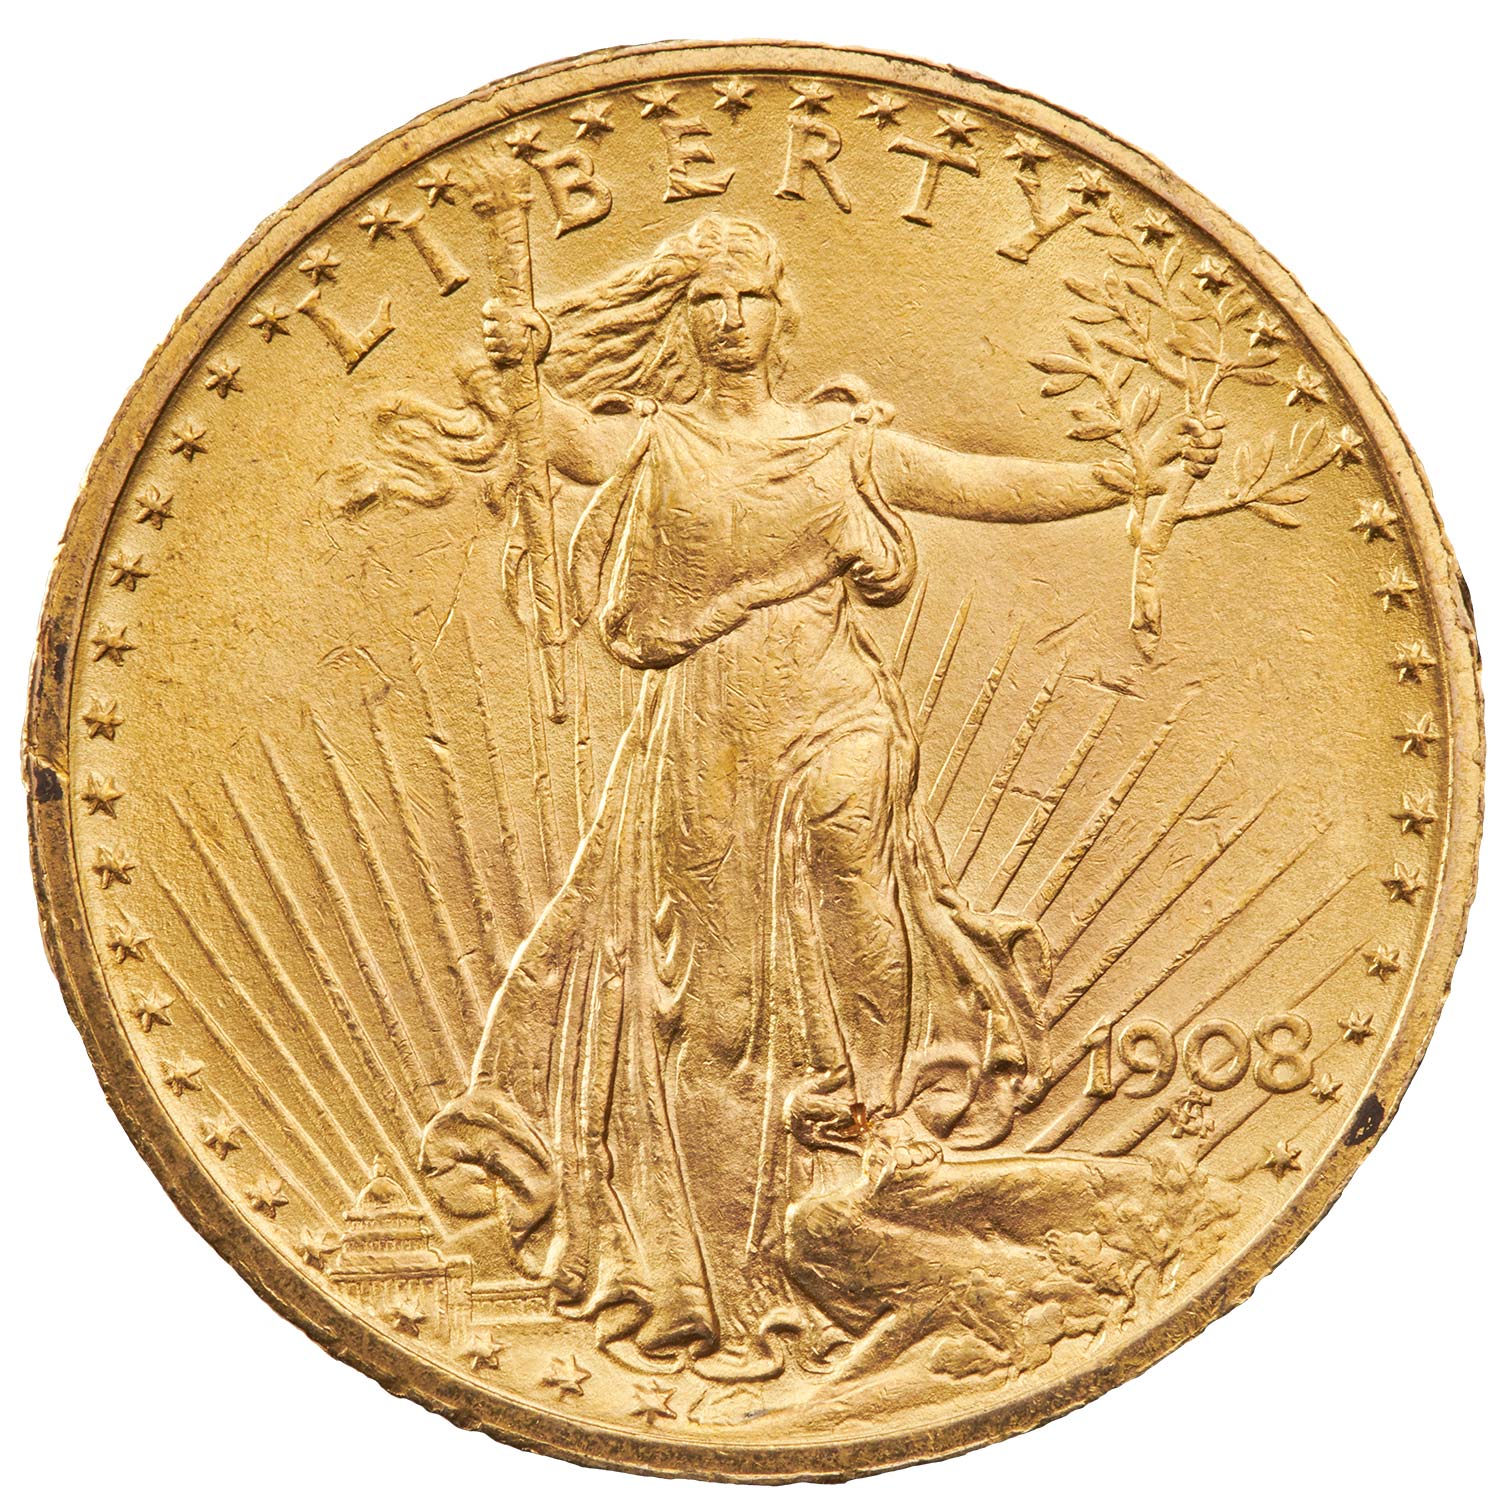 Với vàng Saint Gaudens 20 đô la Mỹ 1907-1933 EF, đây là sự lựa chọn tuyệt vời để thêm vào bộ sưu tập của bạn. Chiếc đồng tiền vàng này được coi là một trong những sản phẩm nghệ thuật tốt nhất của Mỹ và sẽ làm hài lòng các tín đồ sưu tập tiền vàng. Hãy xem ngay hình ảnh liên quan để chiêm ngưỡng vẻ đẹp của loại tiền đặc biệt này.